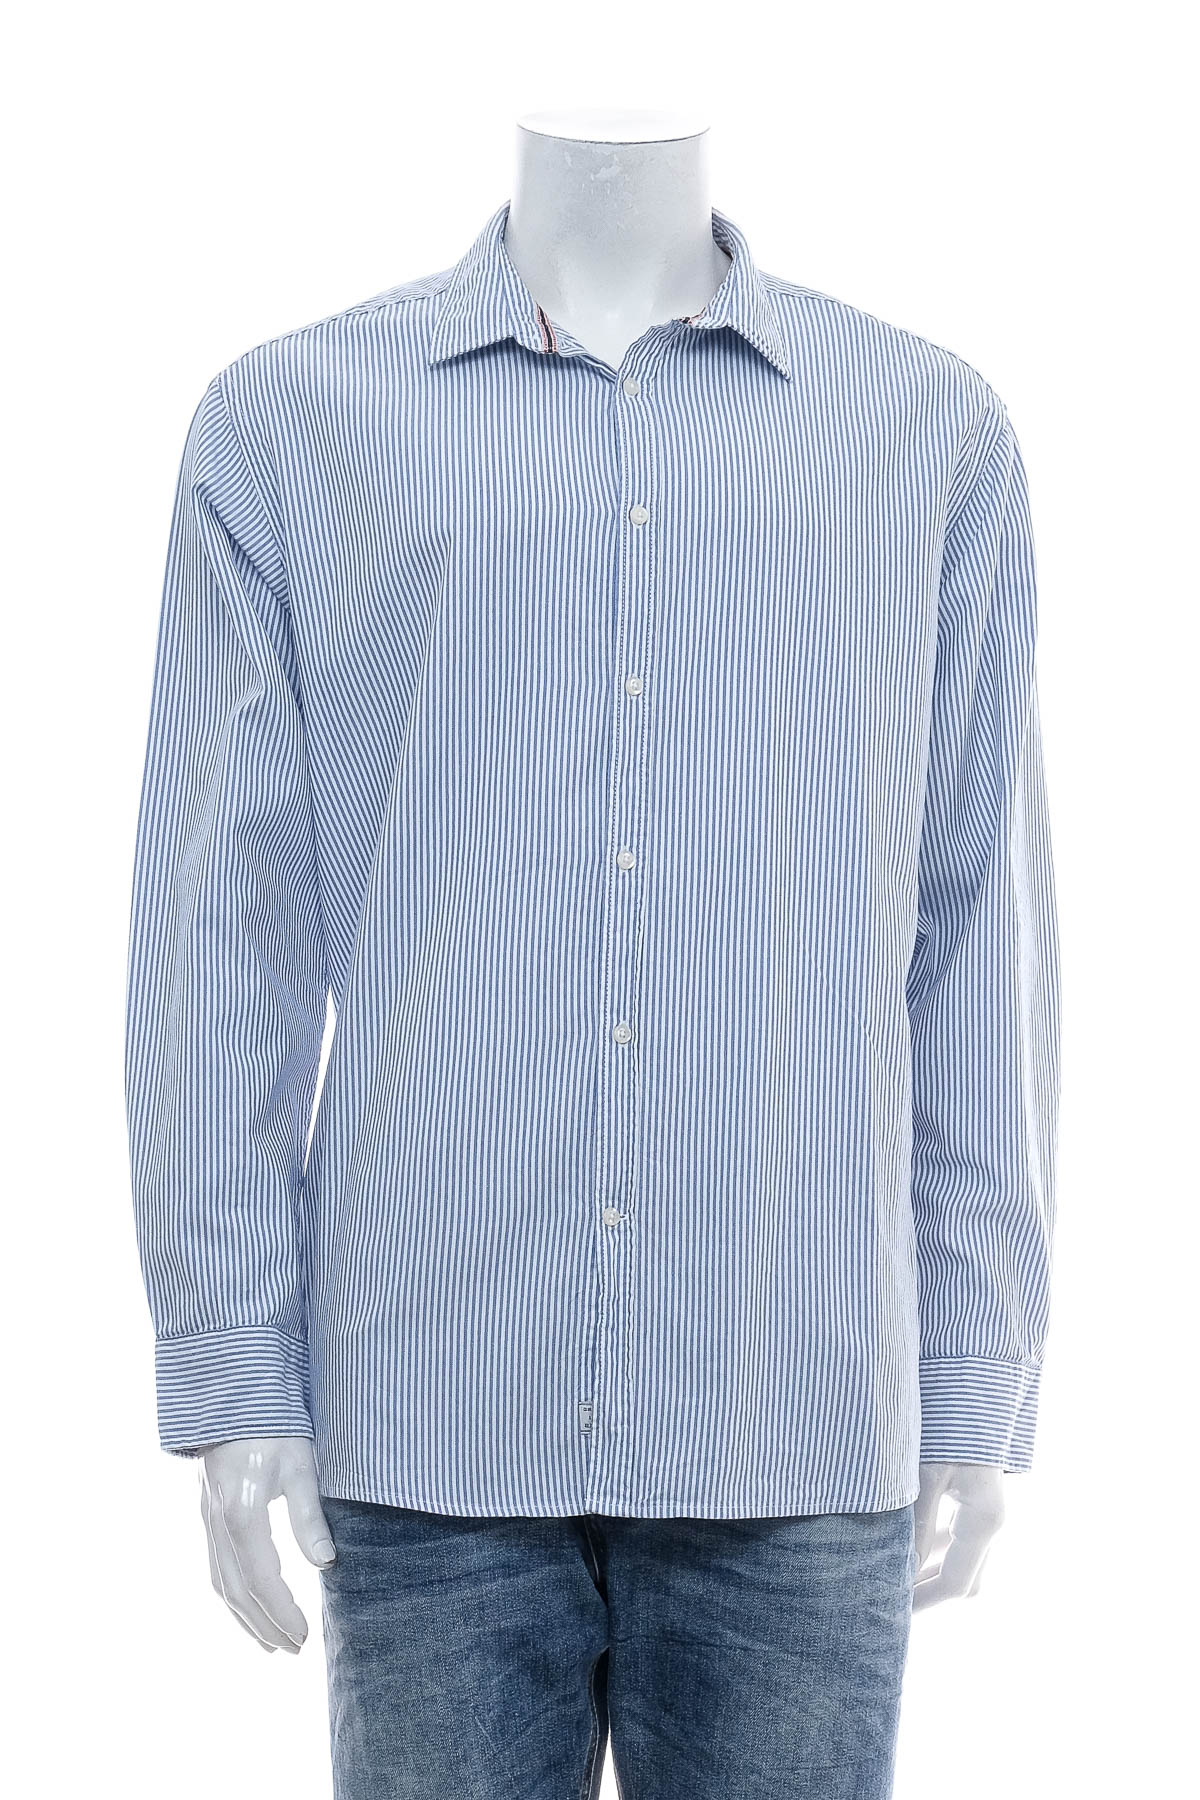 Ανδρικό πουκάμισο - my blue by Tchibo - 0